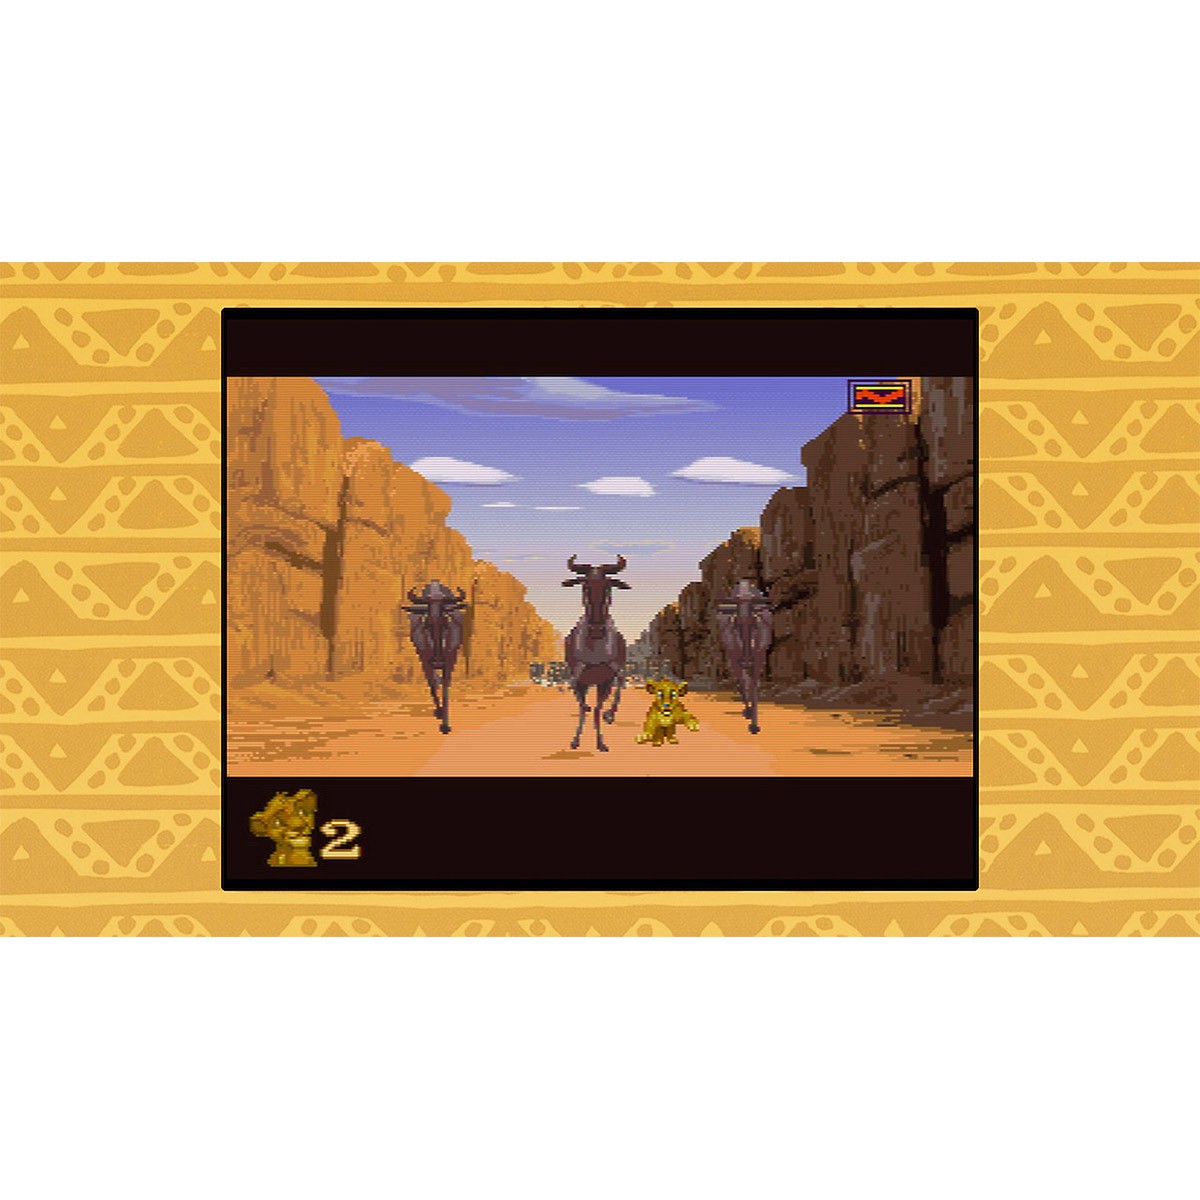 Disney Classic Games: Aladdin e O Rei Leão - Xbox One